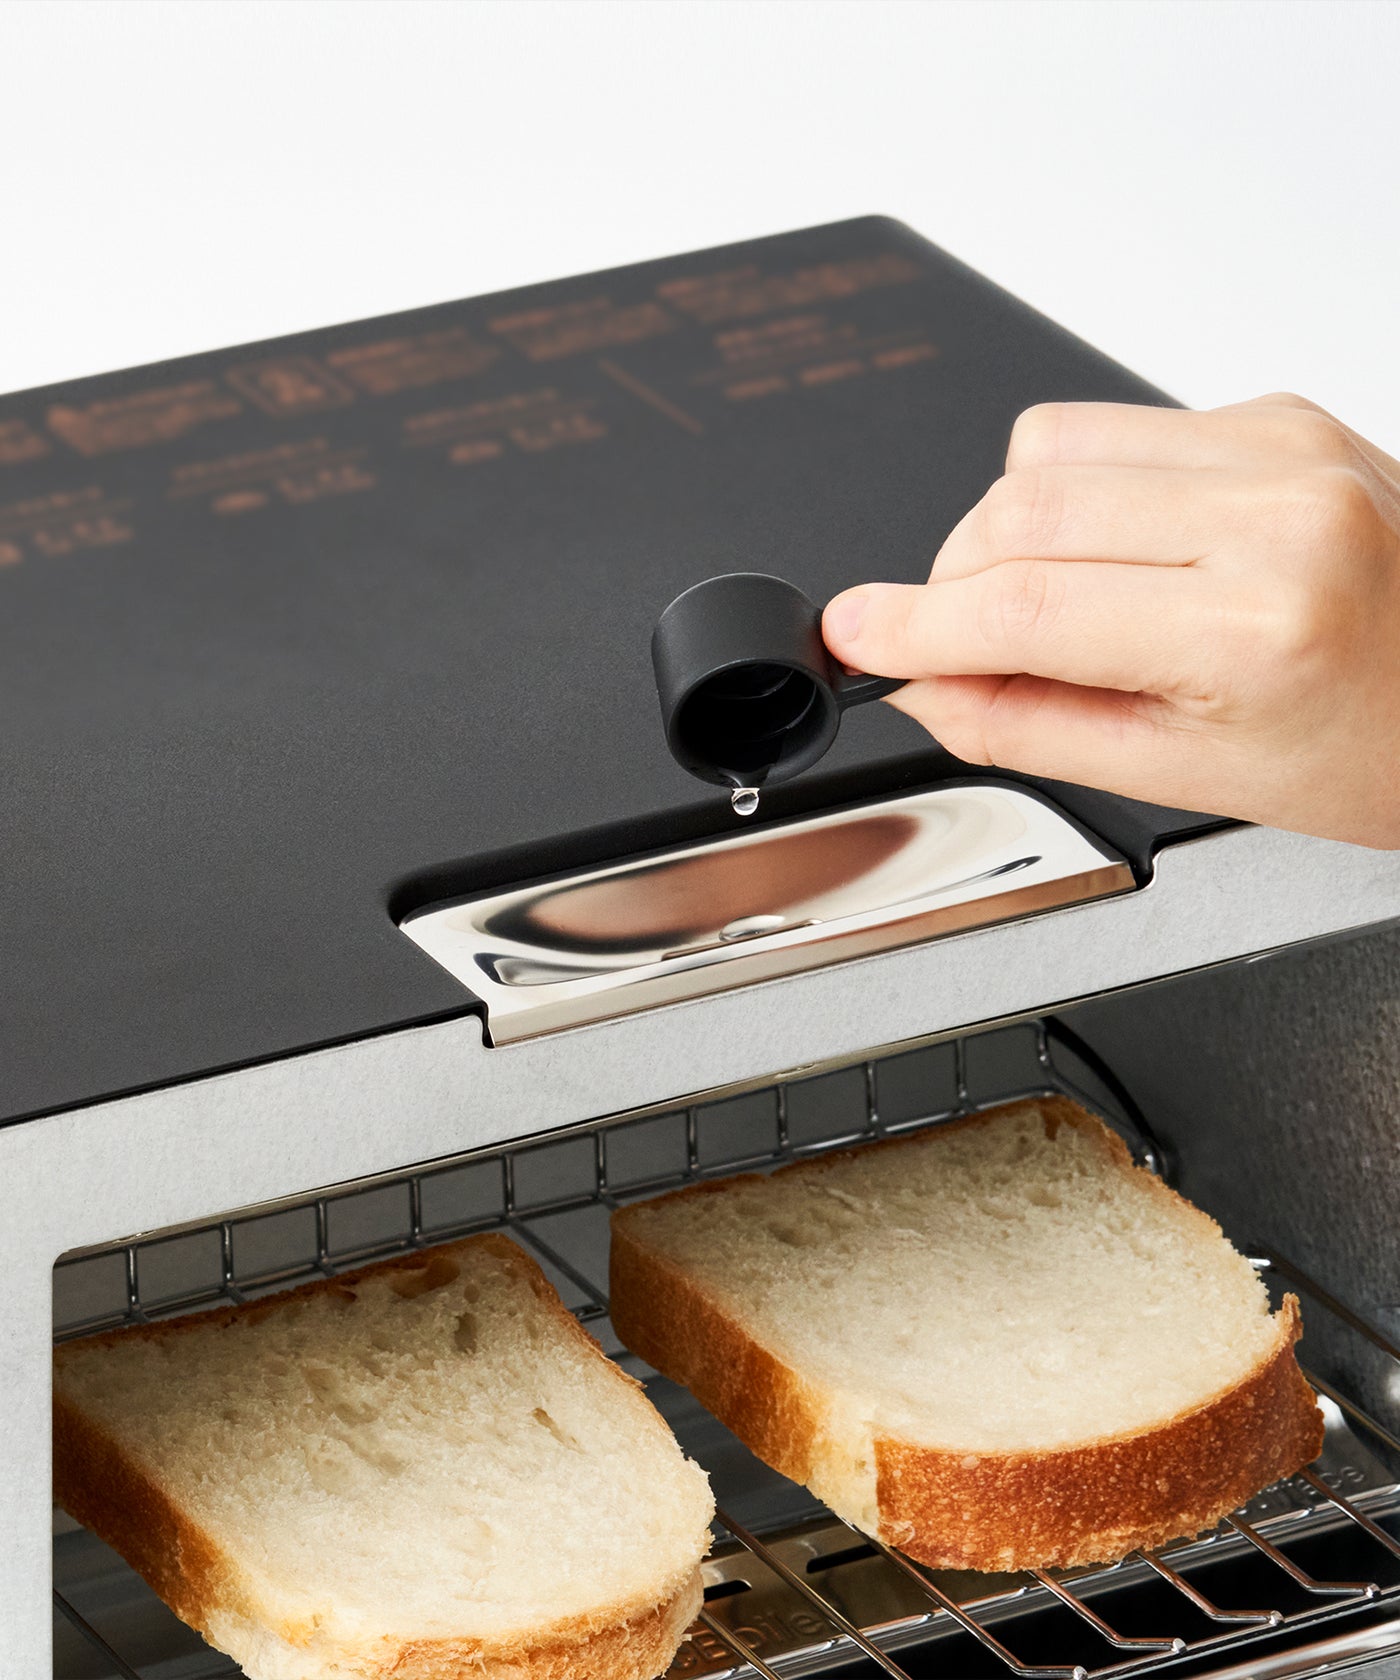 【BALMUDA（バルミューダ）】 The Toaster